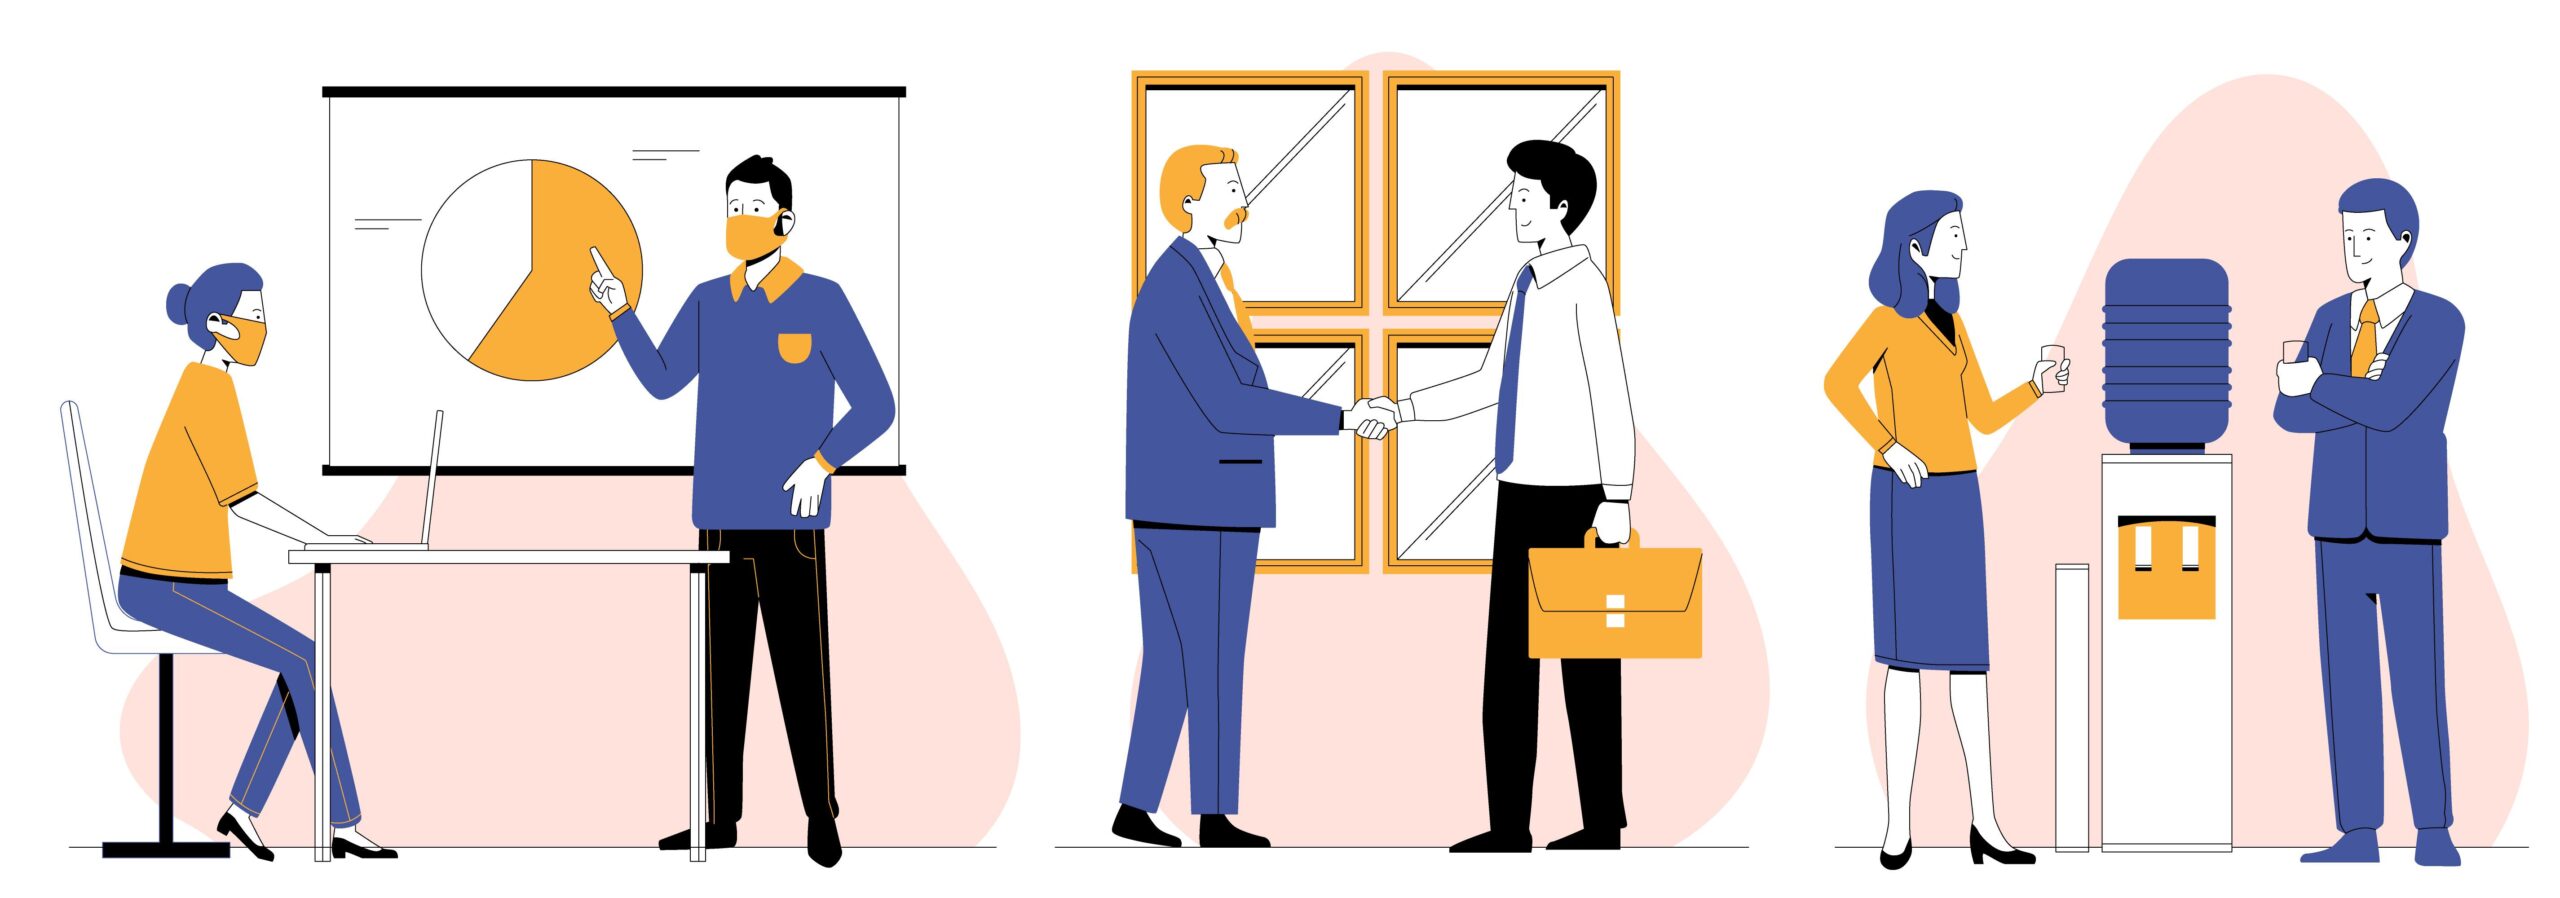 businessperson illustration showing different work day scenarios